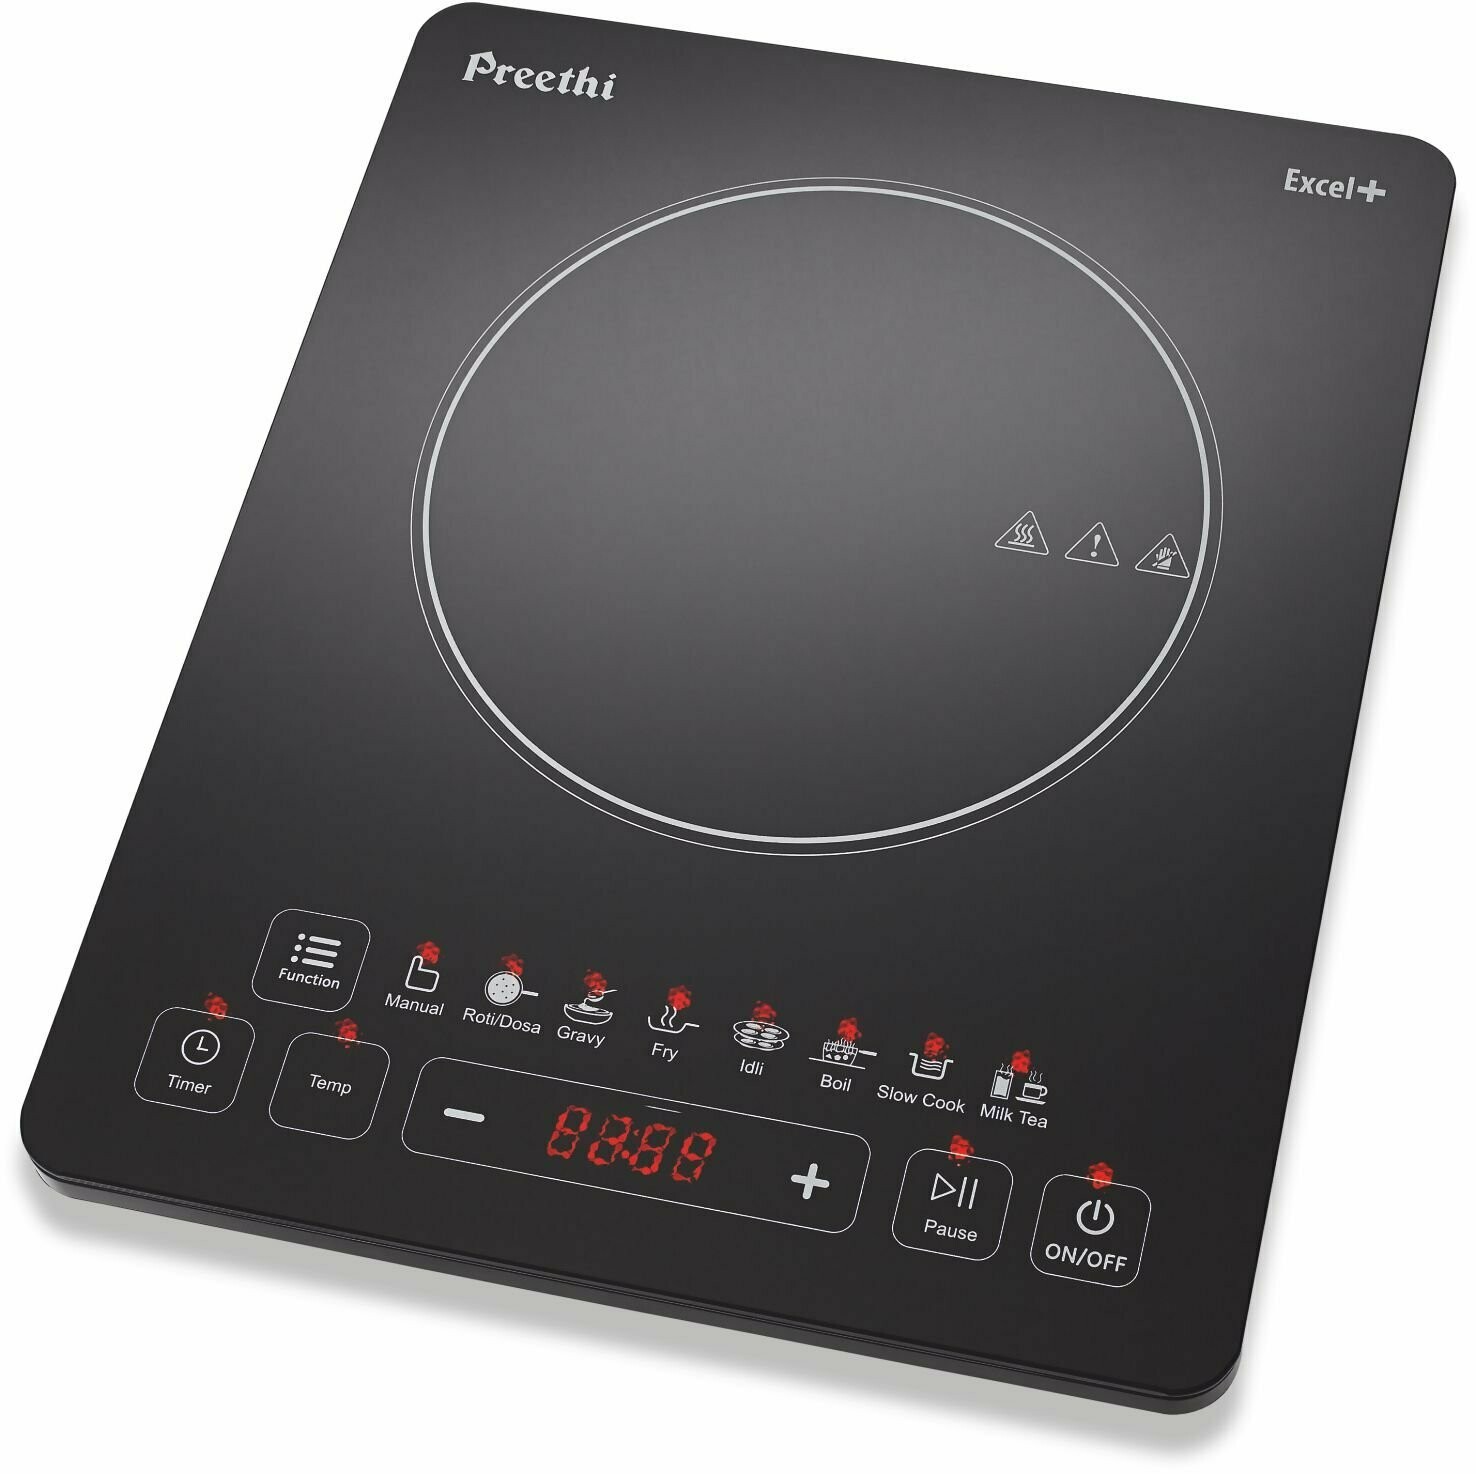 Preethi Excel Plus 117 1600-Watt Induction Cooktop